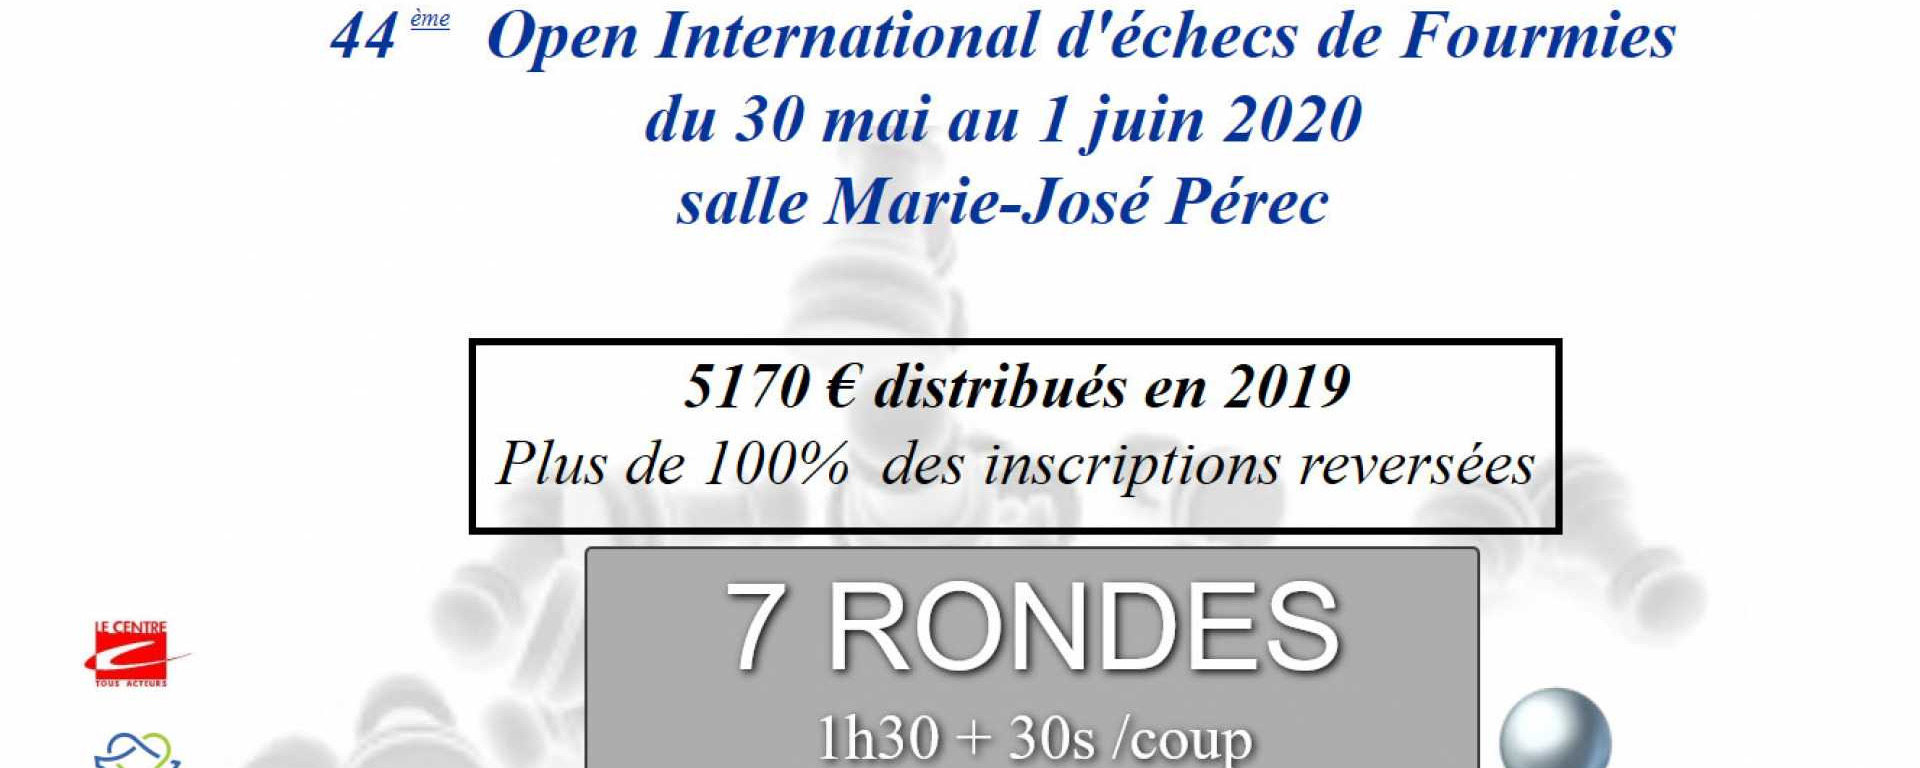 Les 30, 31 mai et 1er juin 2020 / Gymnase Marie José Perec. Gymnase Marie José Perec, rue Labourdette